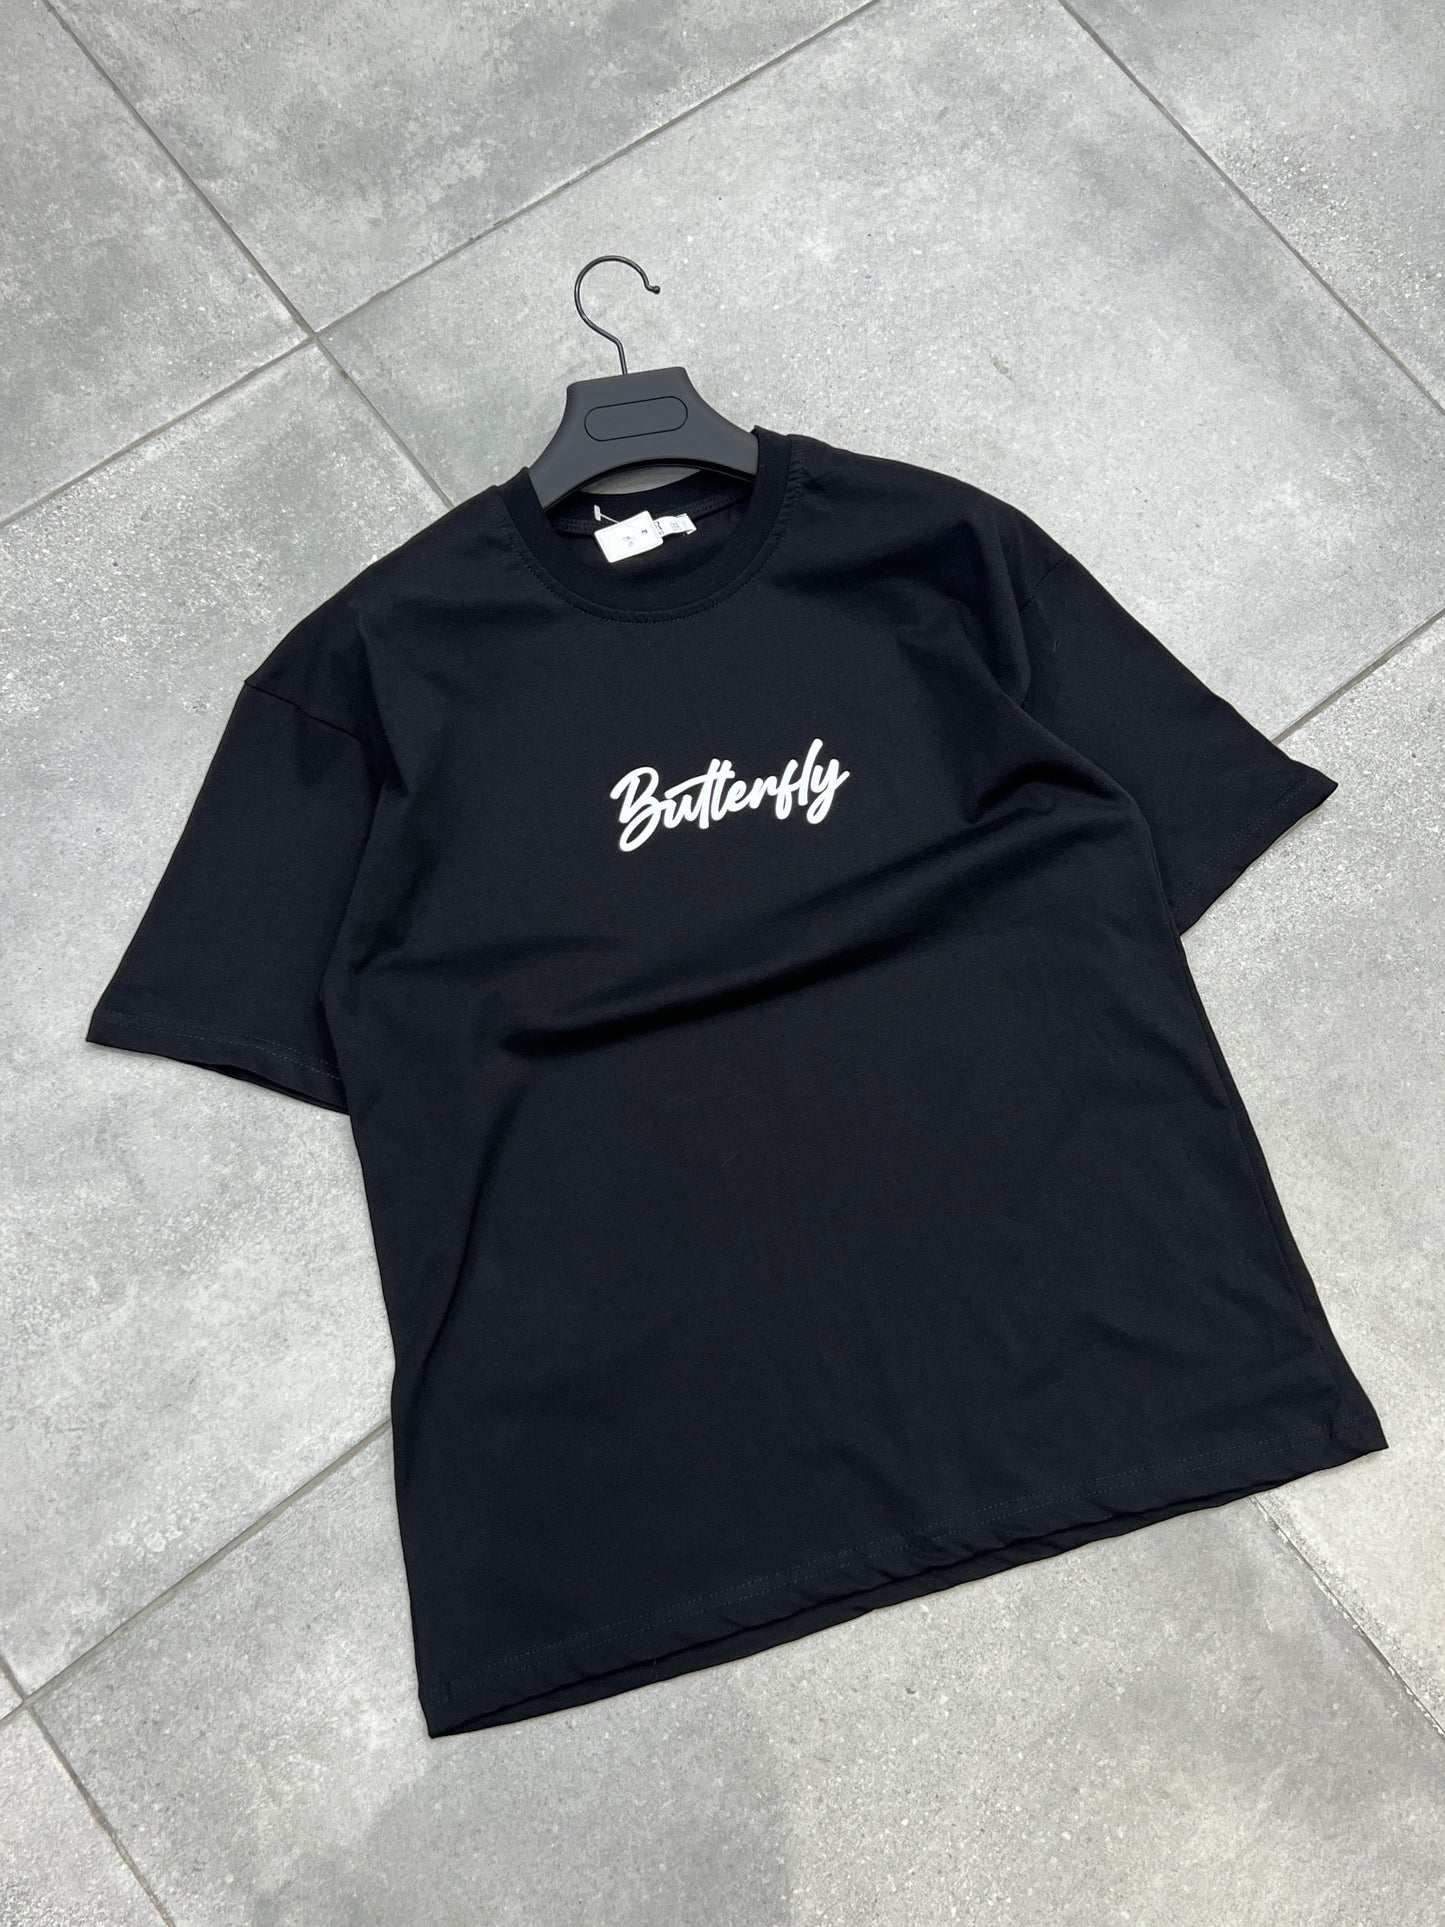 T-Shirt "Butterfly" Noir